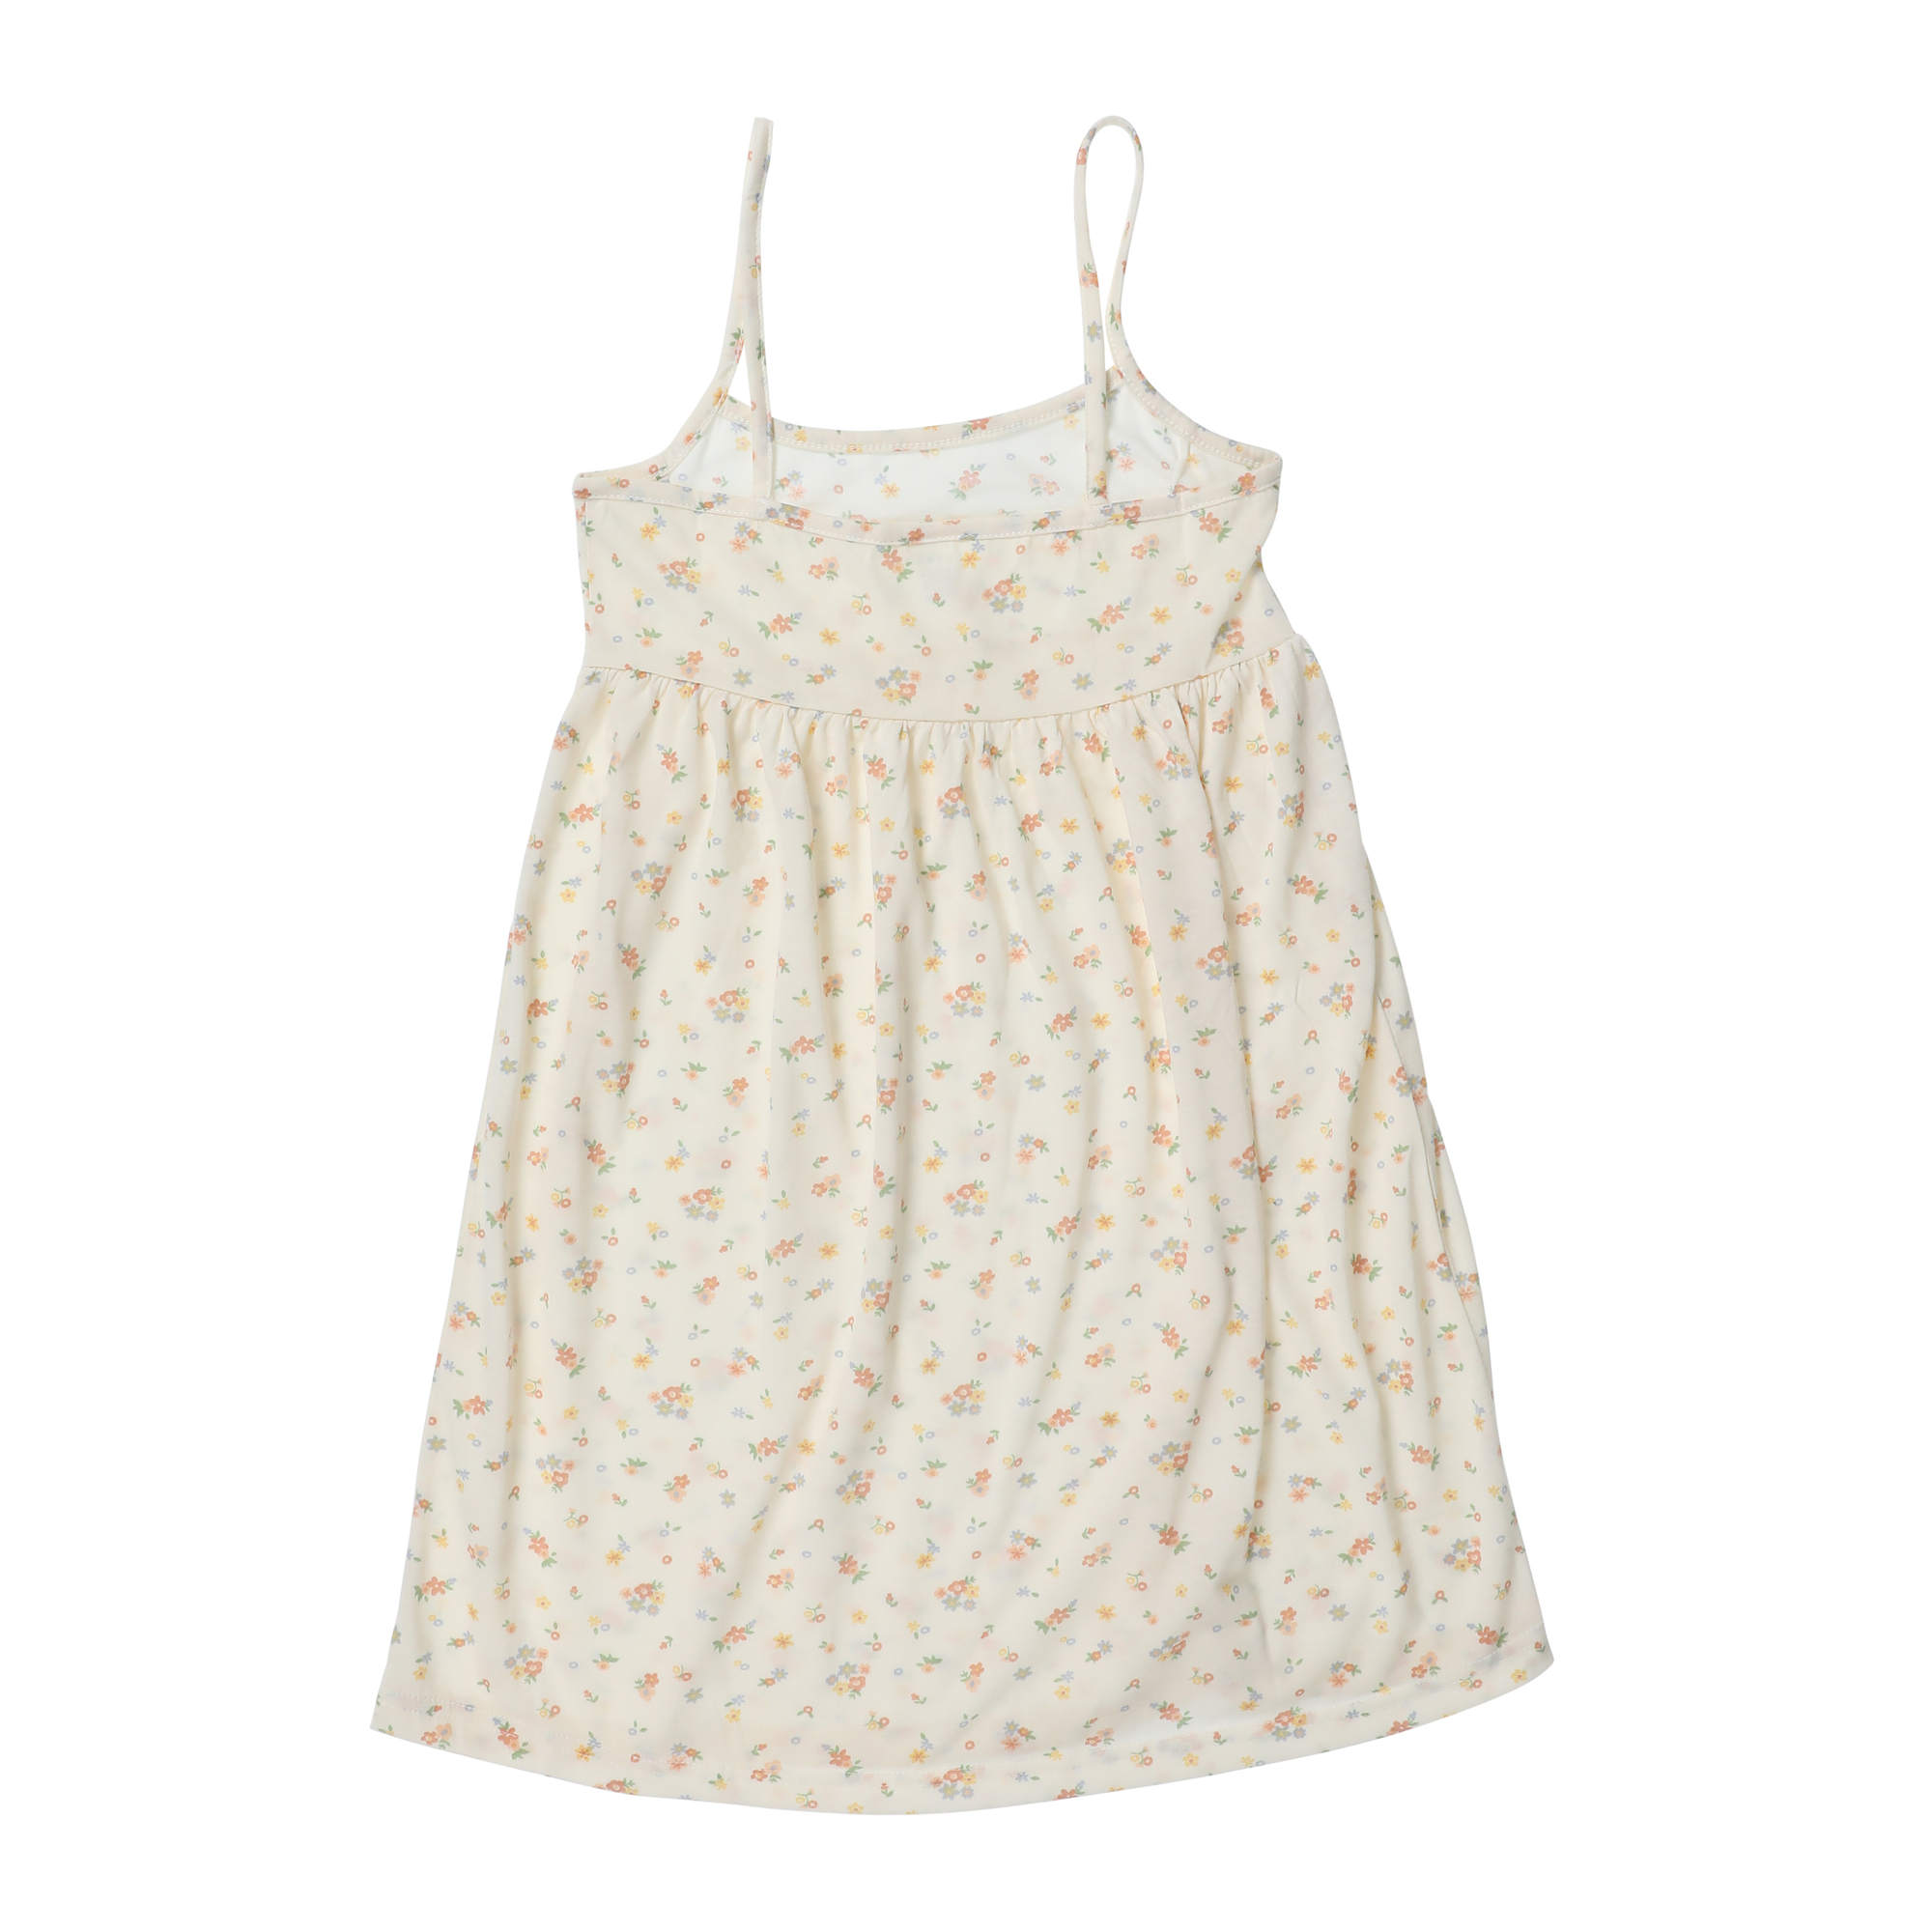 Junia Short Floral Babydoll Dress w/ Bow